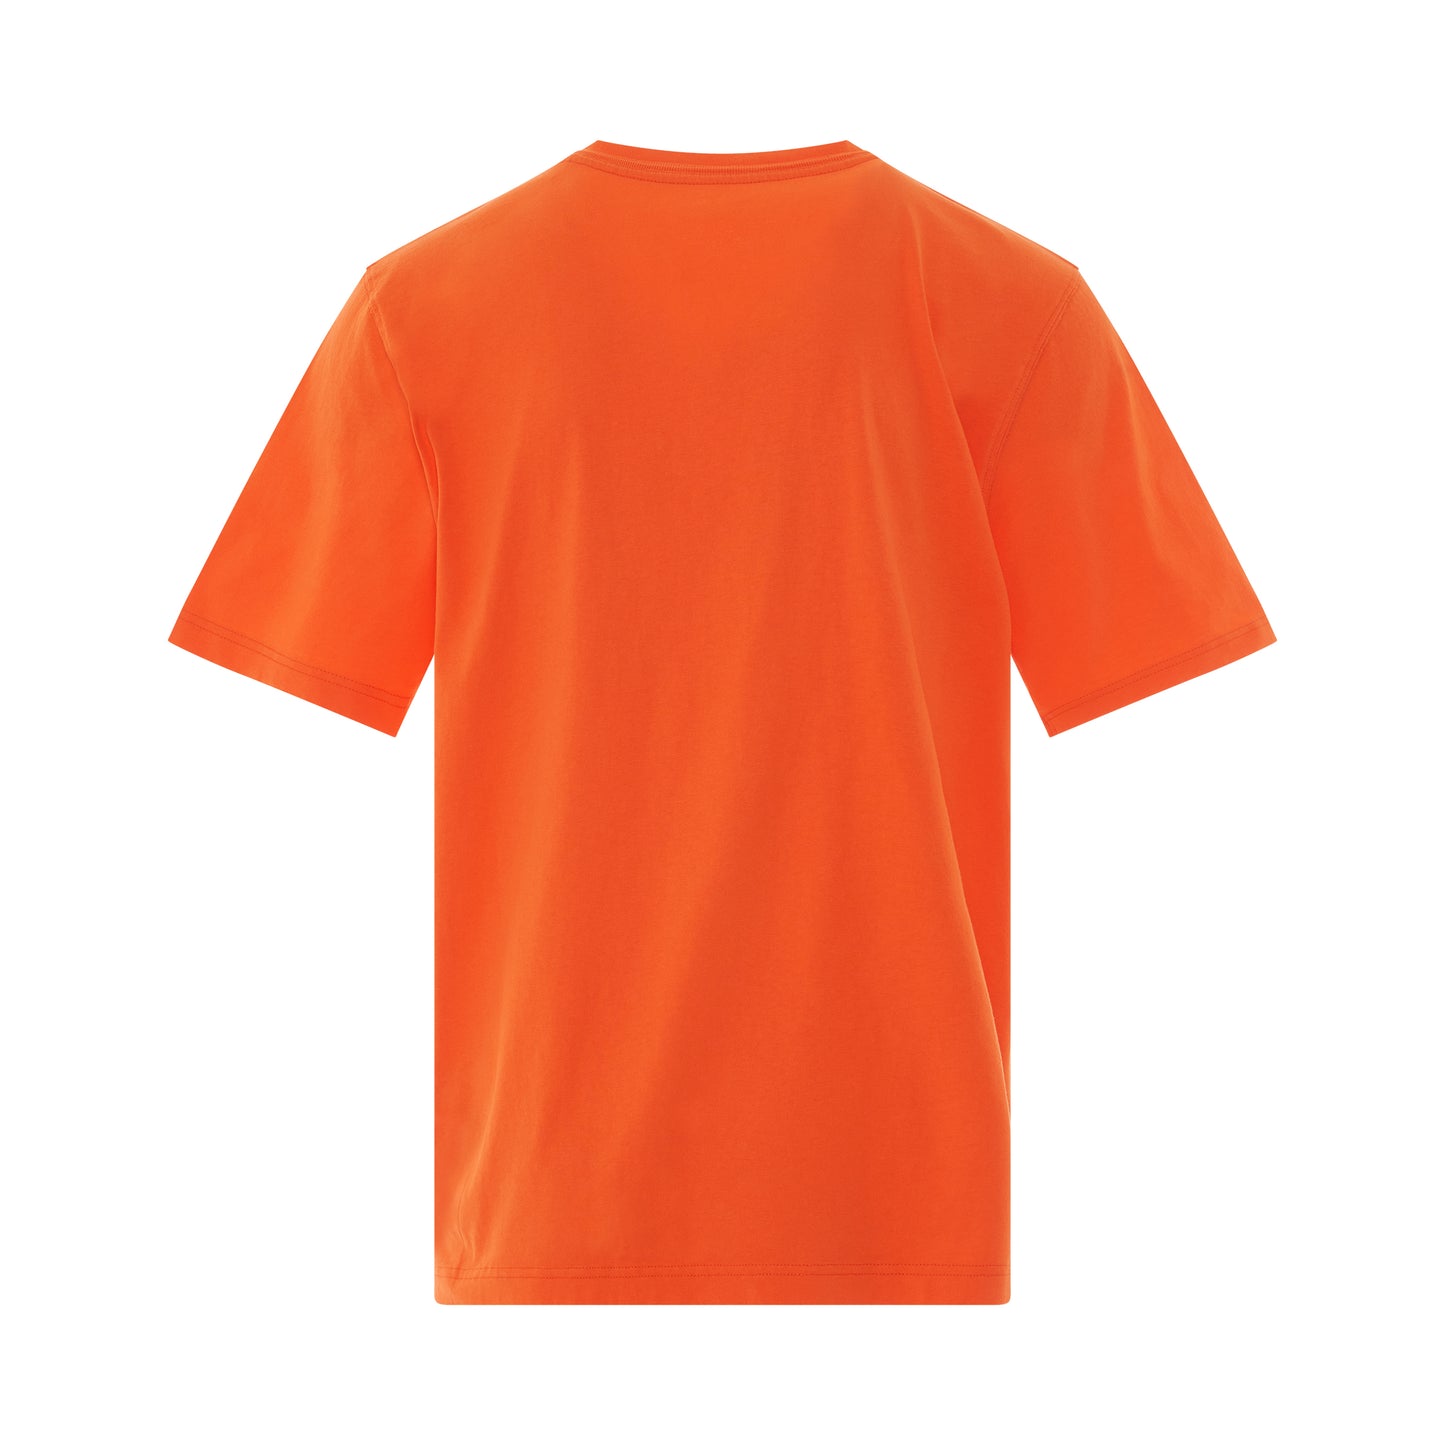 CTNMB Regular T-Shirt in Orange